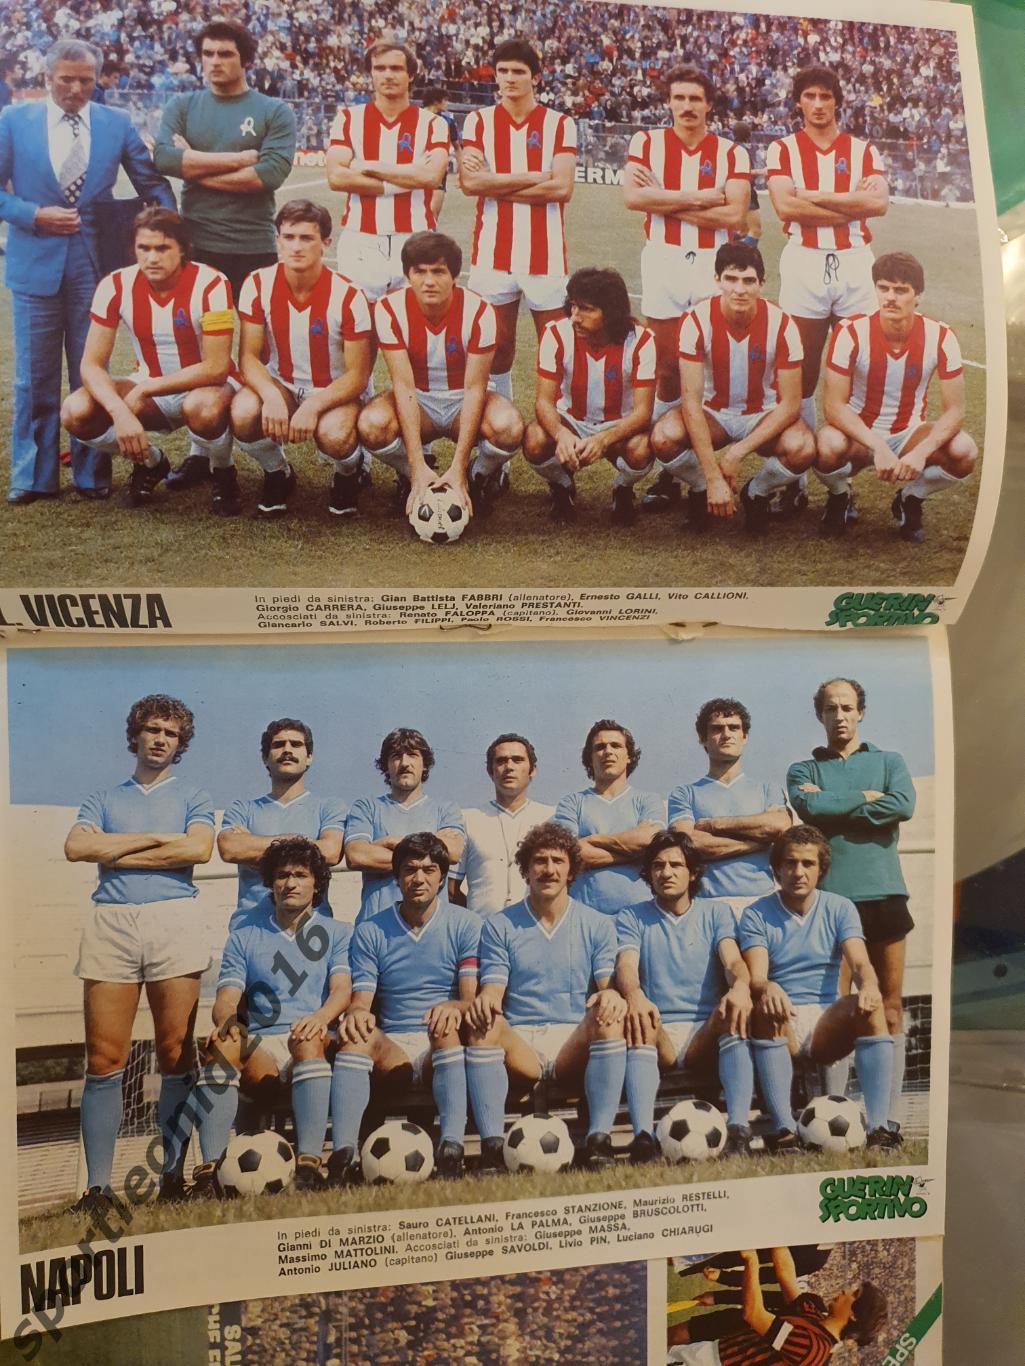 Guerin Sportivo 46/1977.12 постеров клубов высшей итальянской лиги.2 3